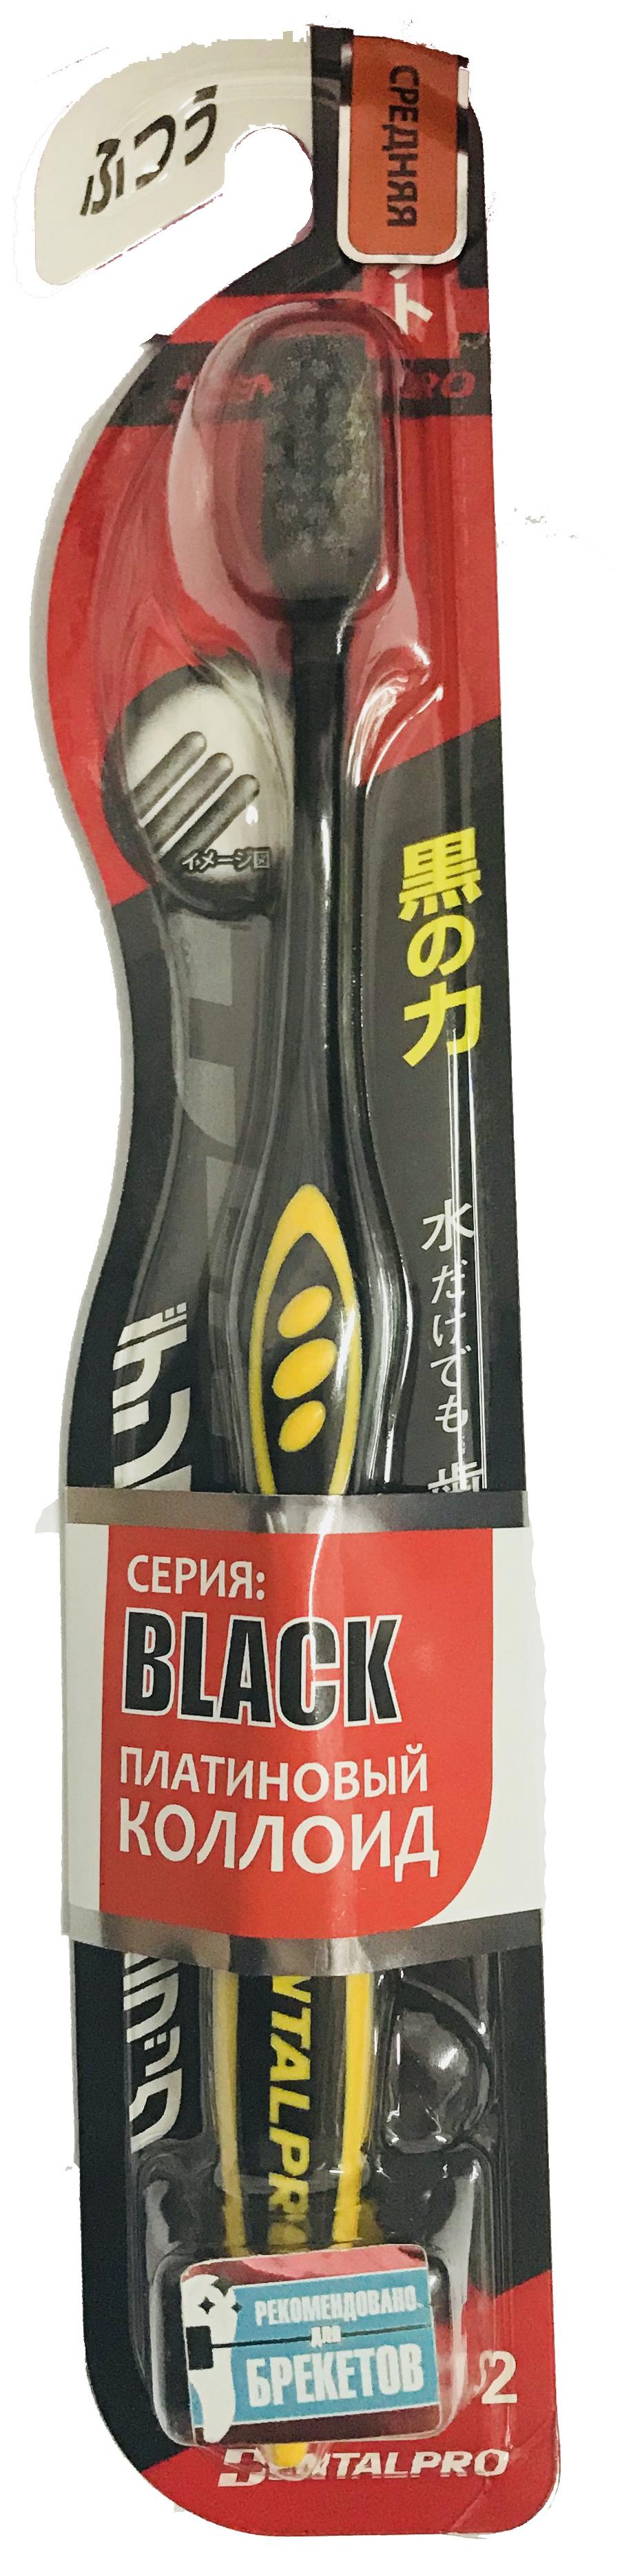 Dentalpro Black Compact Head Зубная щетка с коллоидной керамикой Средней жесткости